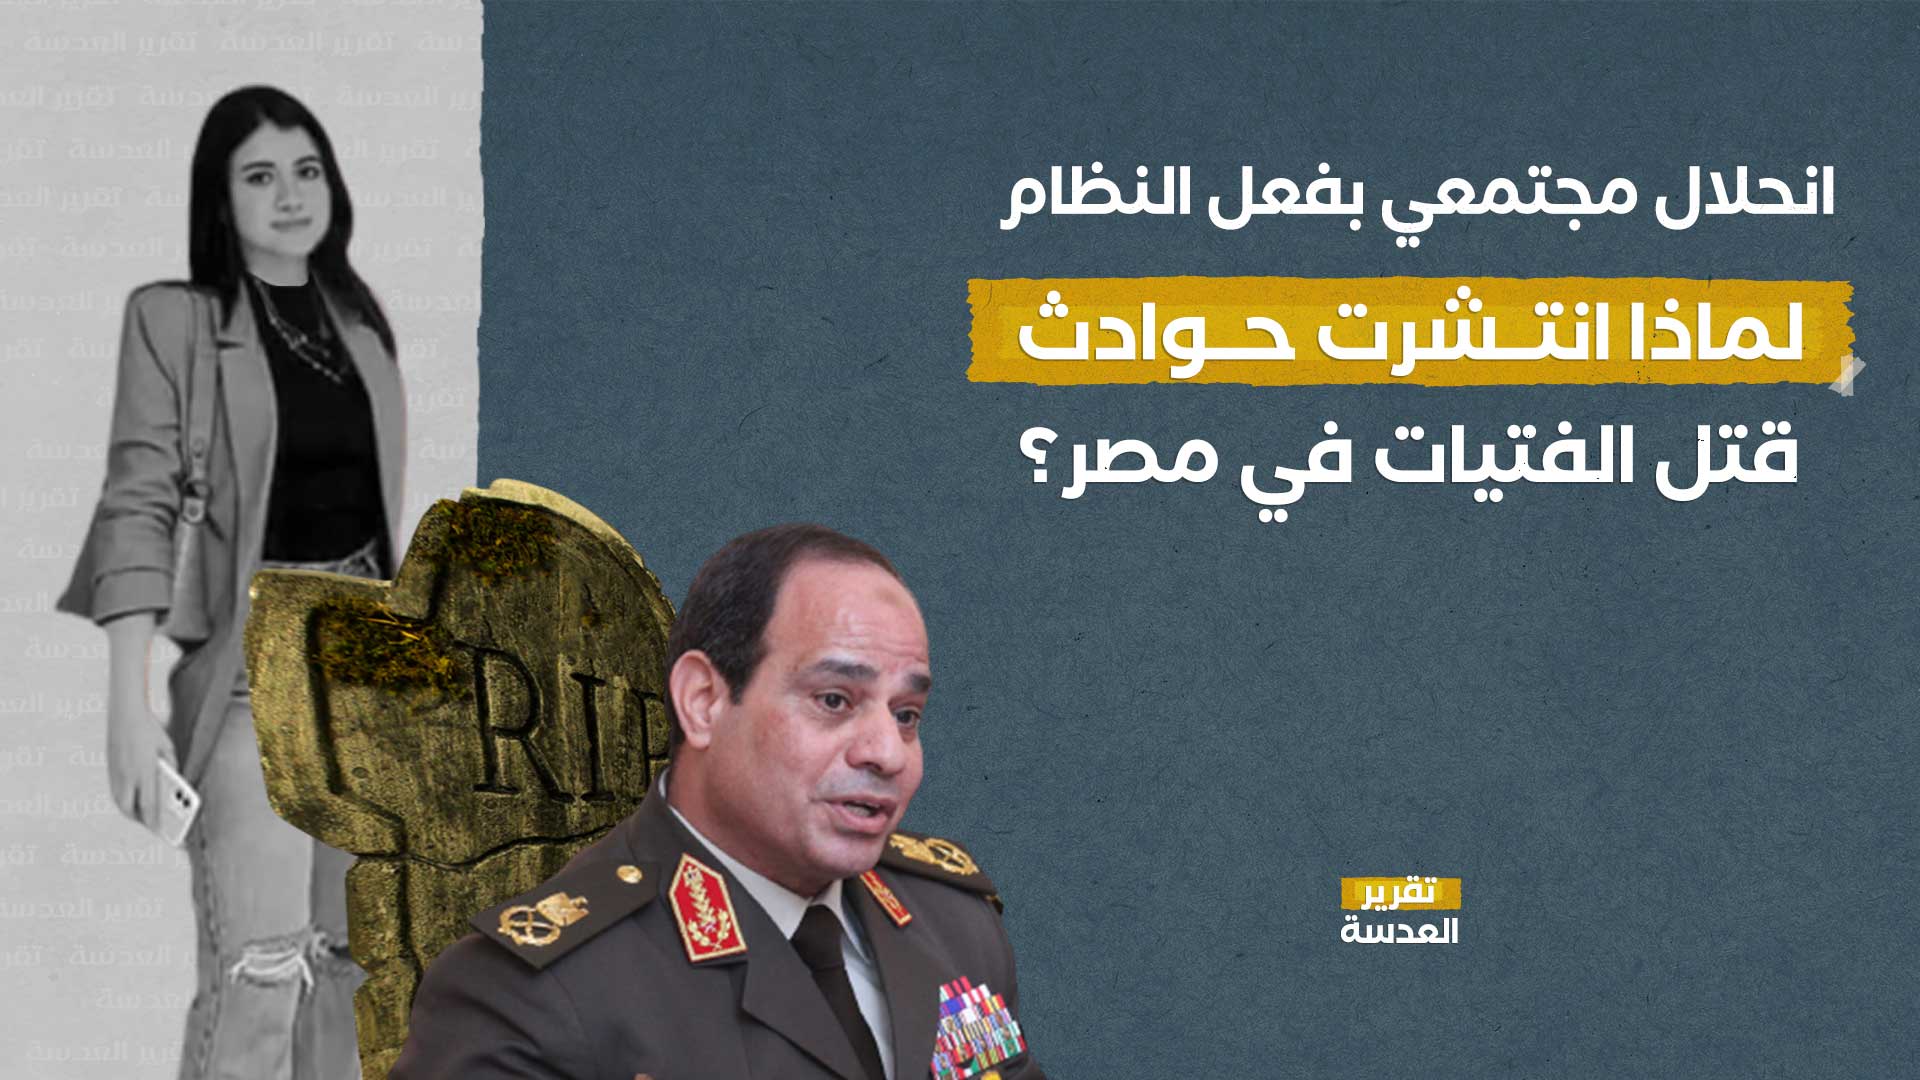 انحلال مجتمعي بفعل النظام.. لماذا انتشرت حوادث قتل الفتيات في مصر؟!